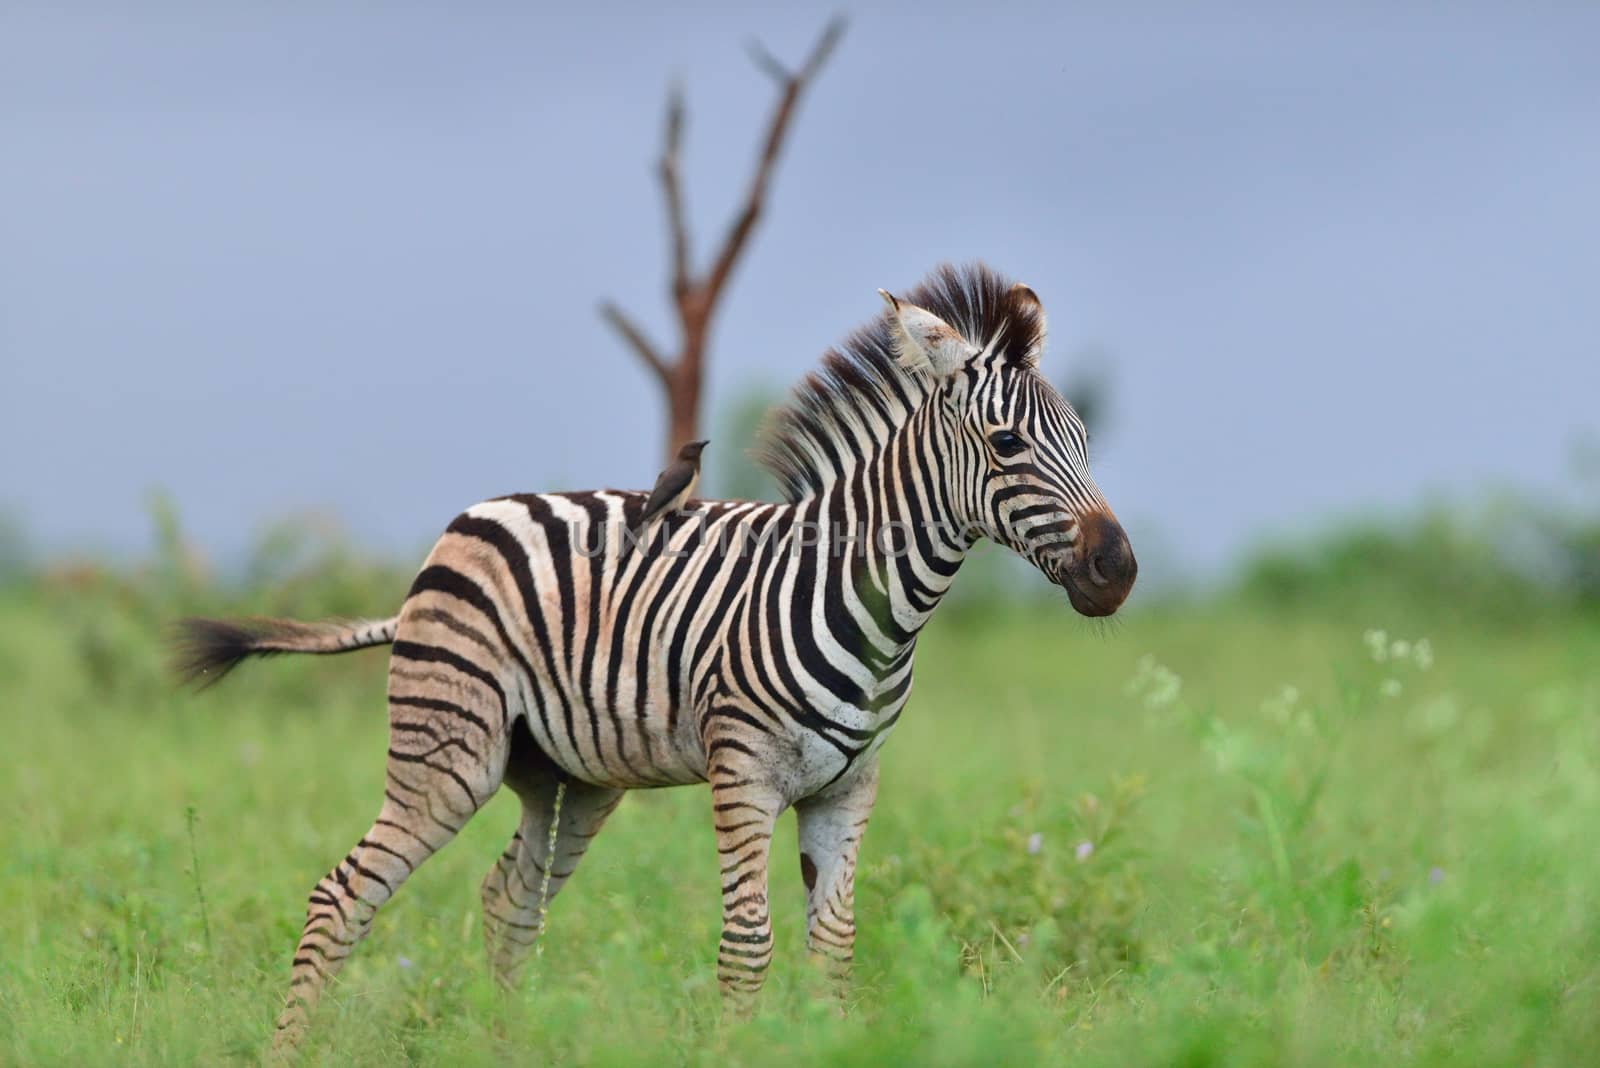 Zebra foal in the wilderness by ozkanzozmen